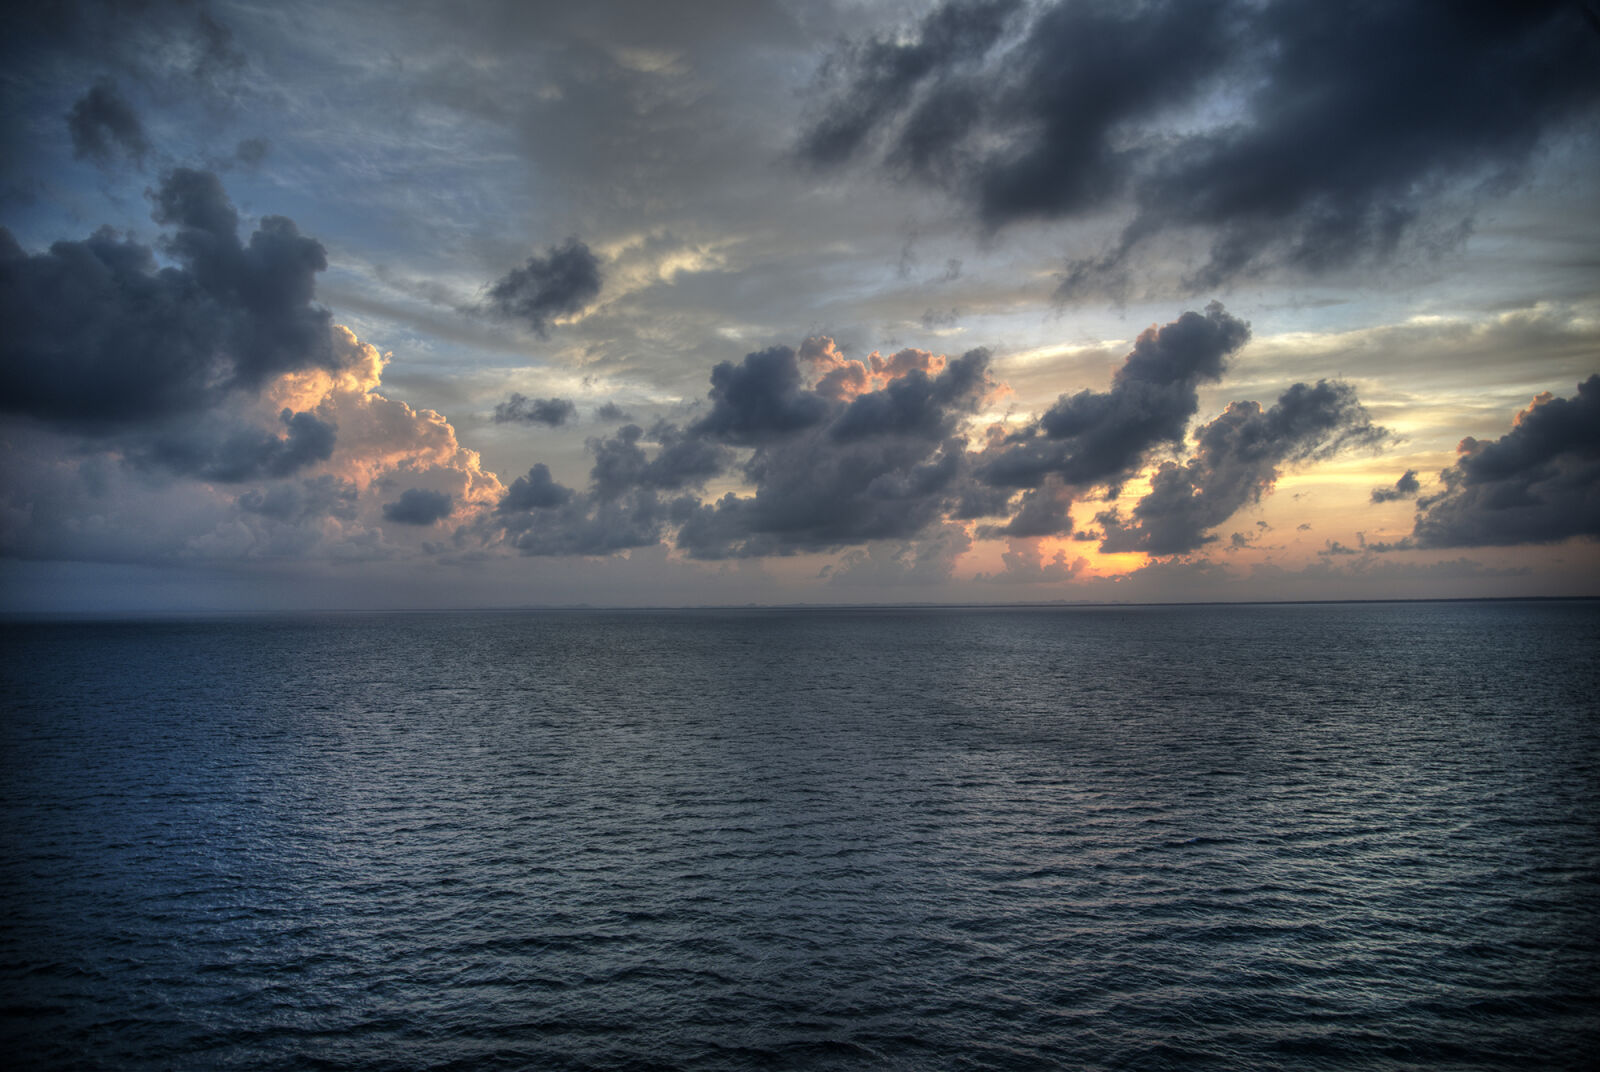 Nikon D800 sample photo. Clouds, ocean, sunset photography